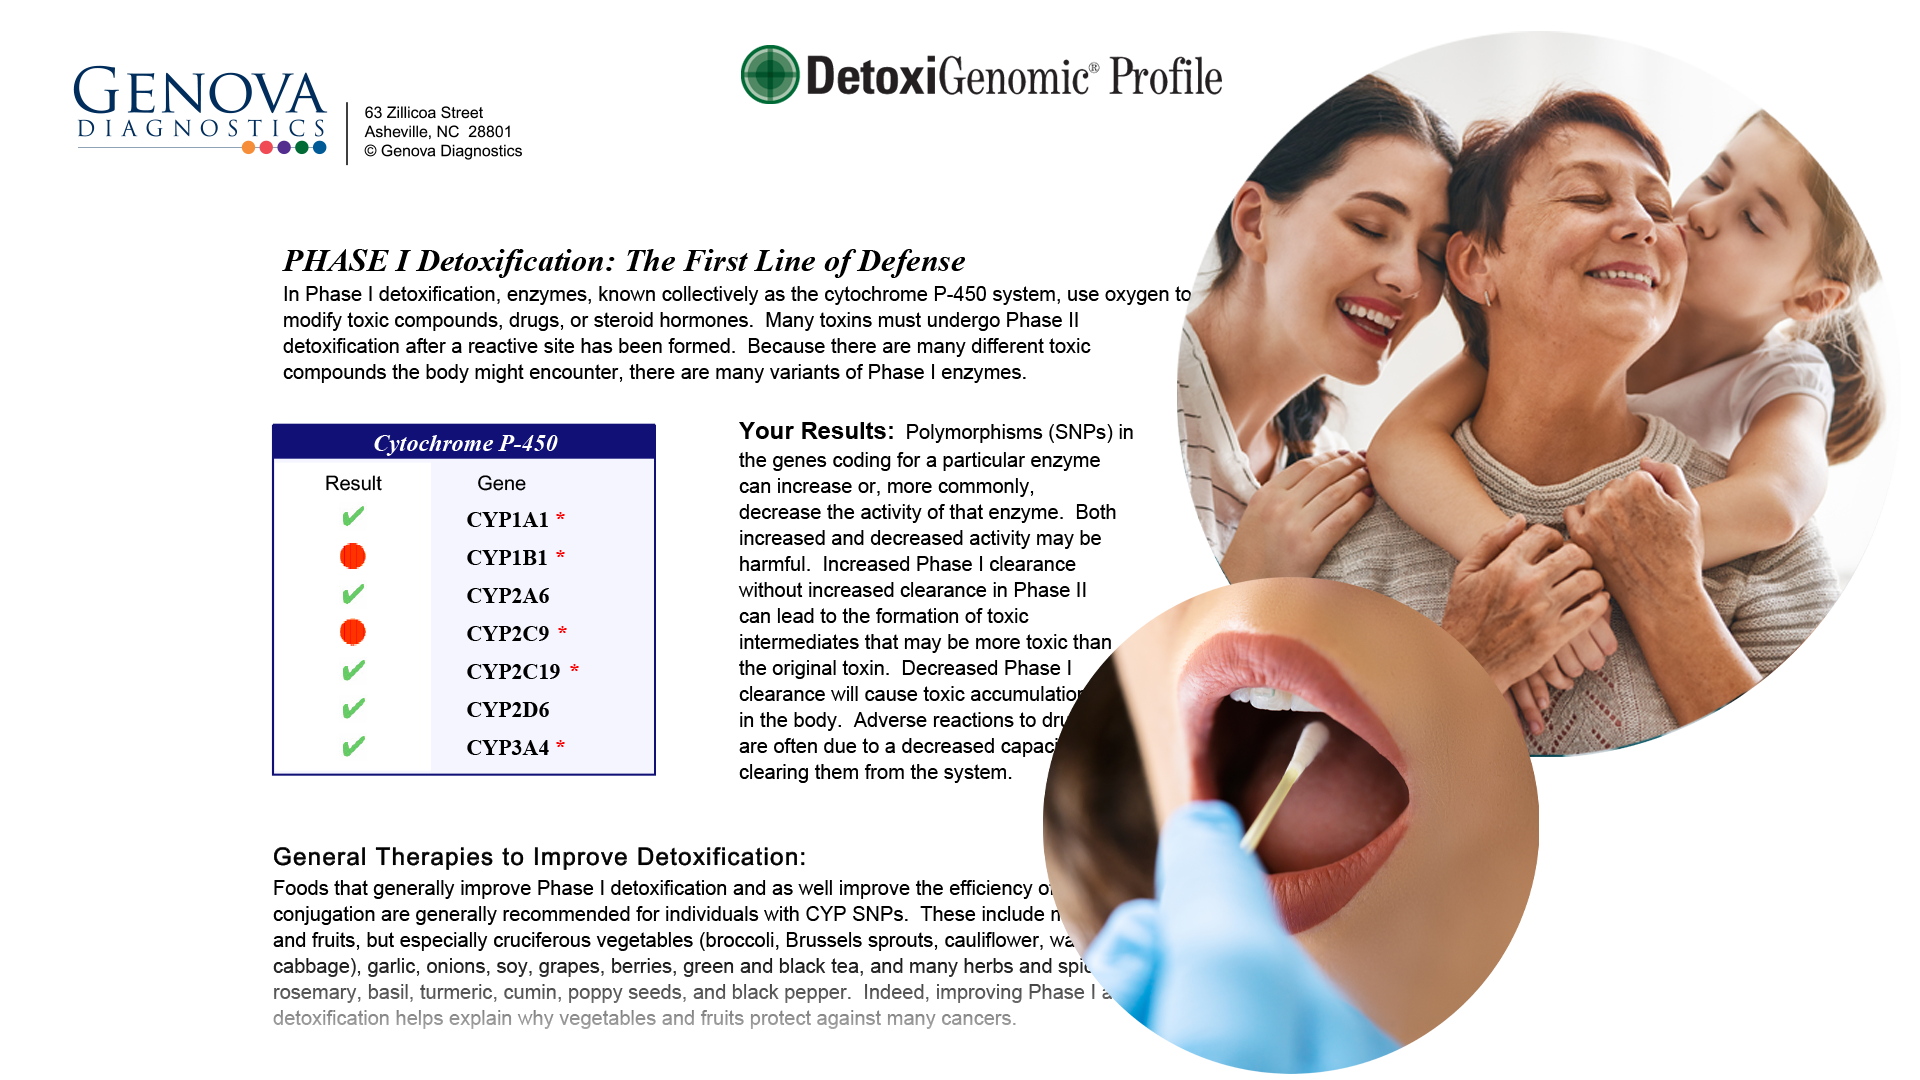 Detoxigenomic Profile